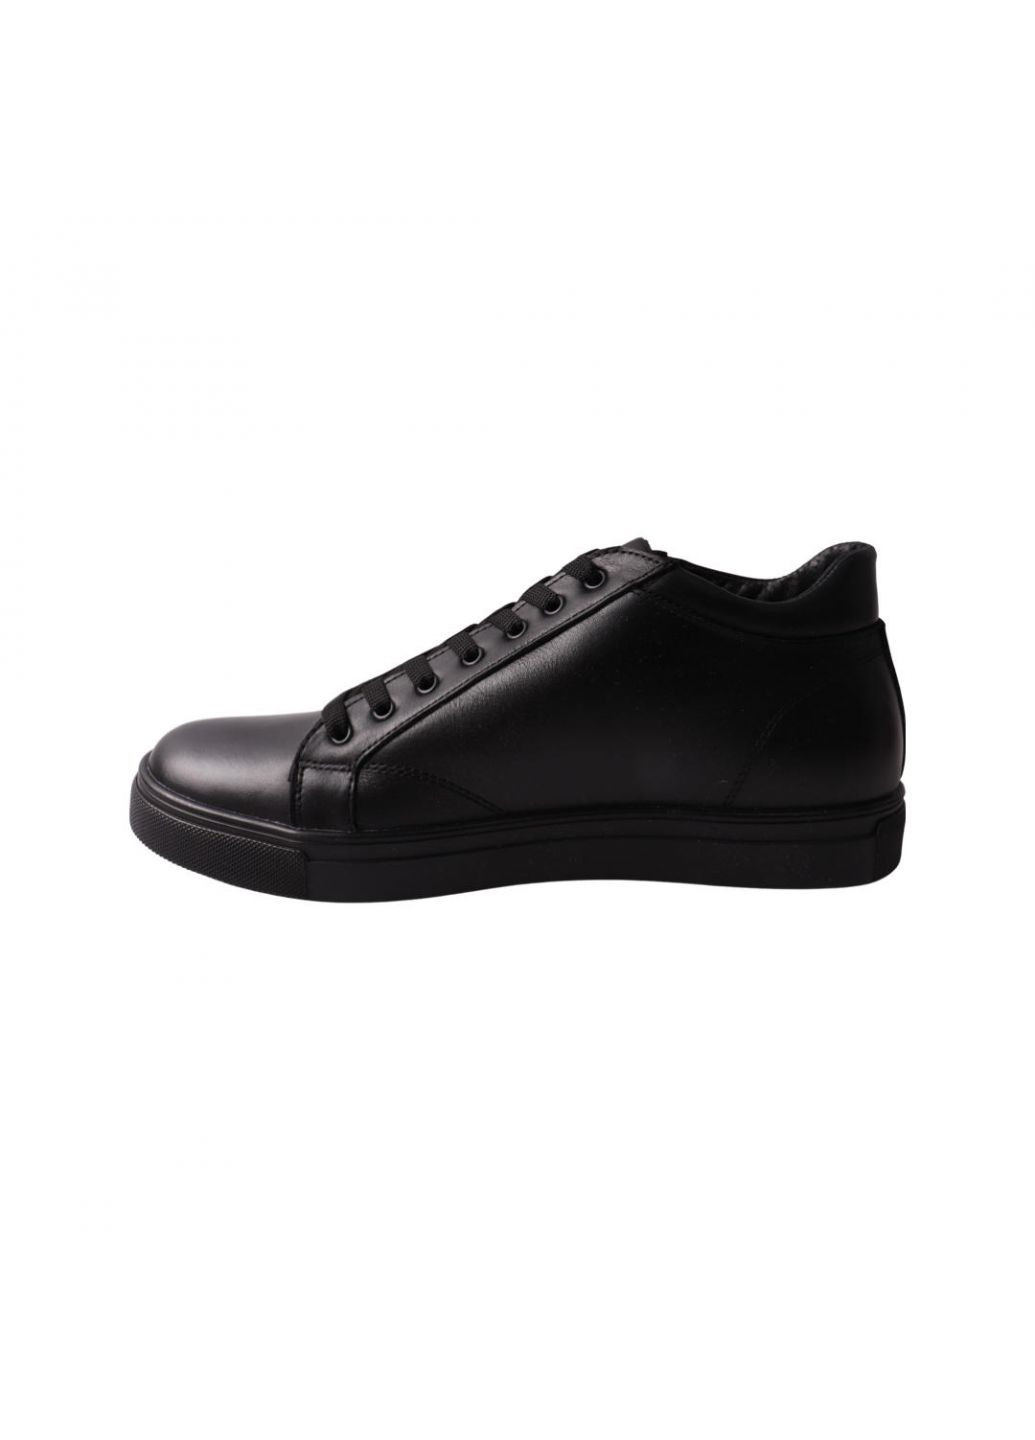 Черные ботинки мужские черные натуральная кожа VAN KRISTI